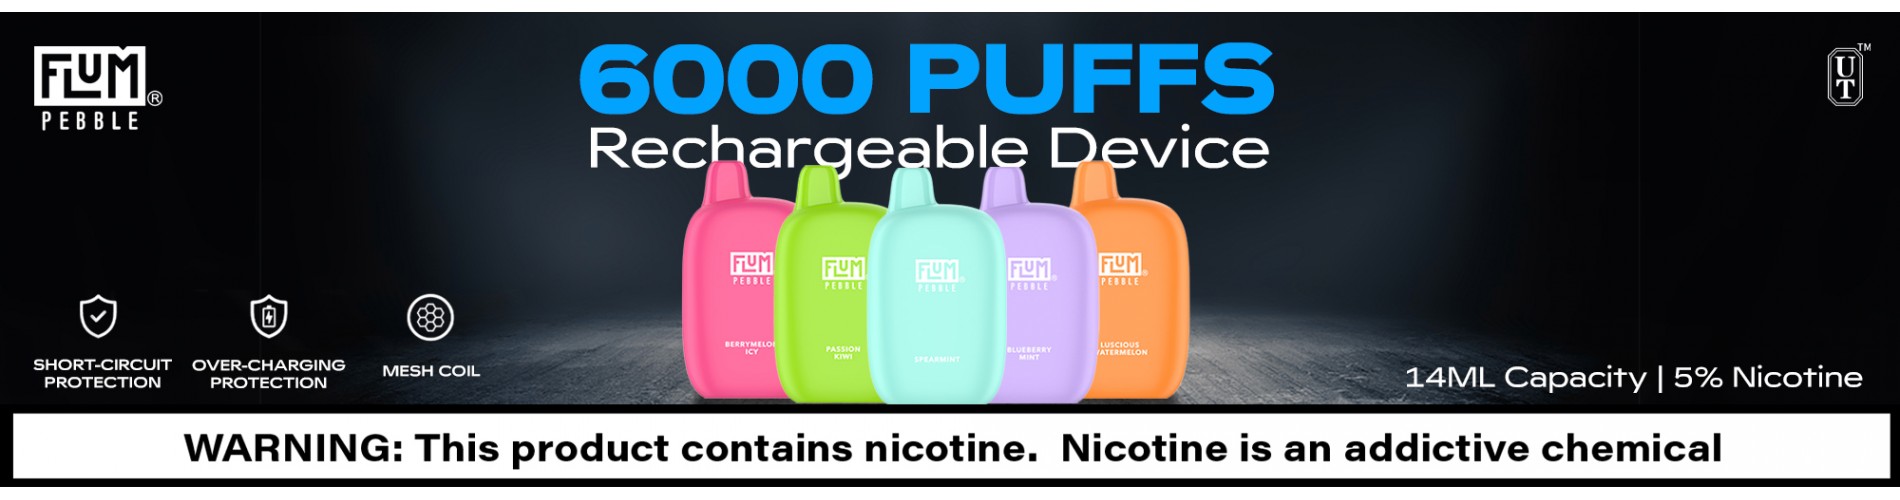 Flum Pebble - 6000 Puff Rechargeable Disposable Vape Device